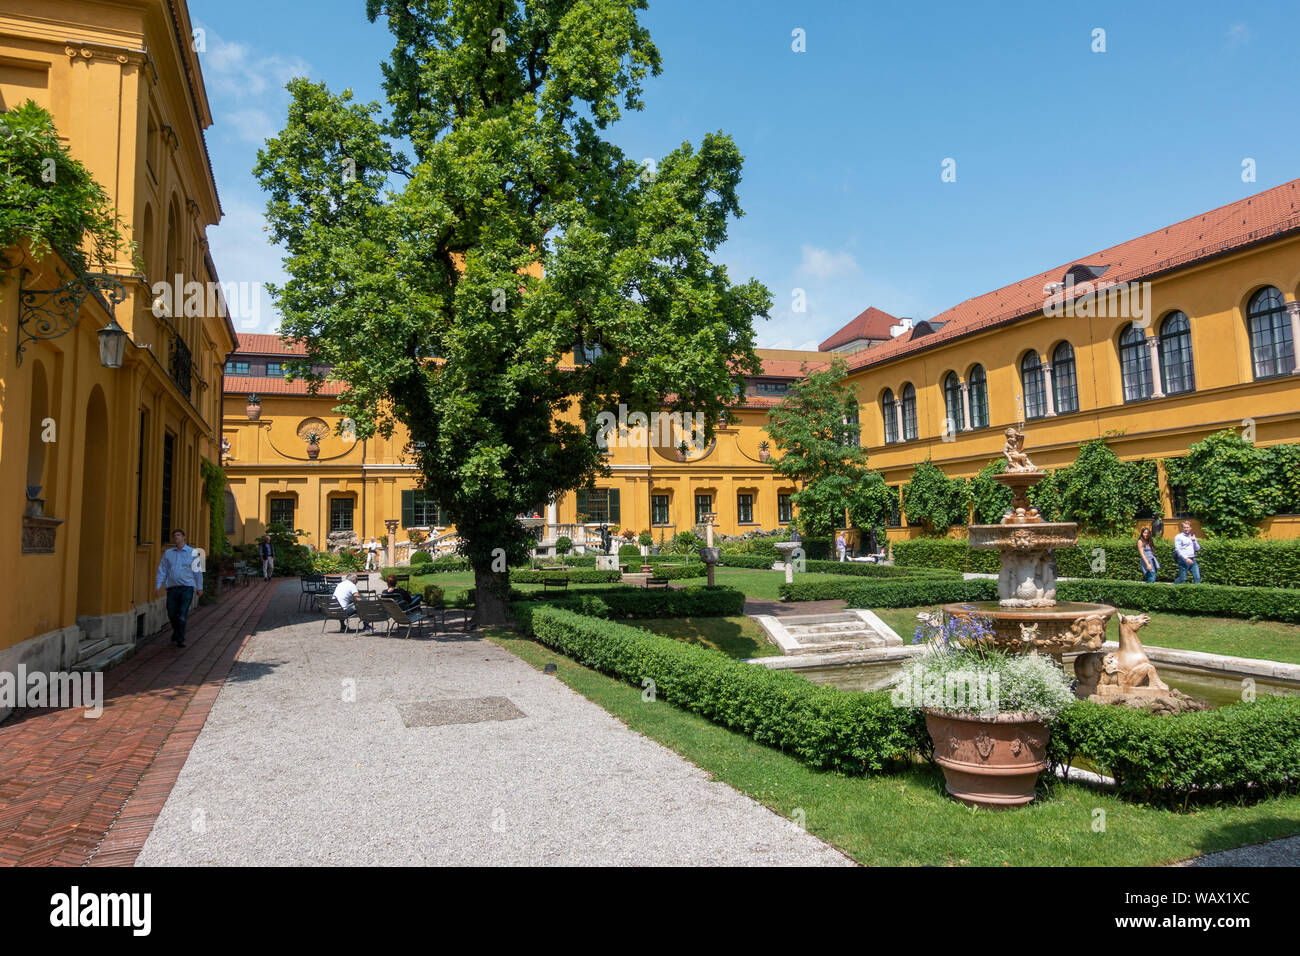 Les jardins du Musée Lenbachhaus moderne et d'art contemporain musée, une villa de style florentin, Kunstareal, Munich, Allemagne. Banque D'Images